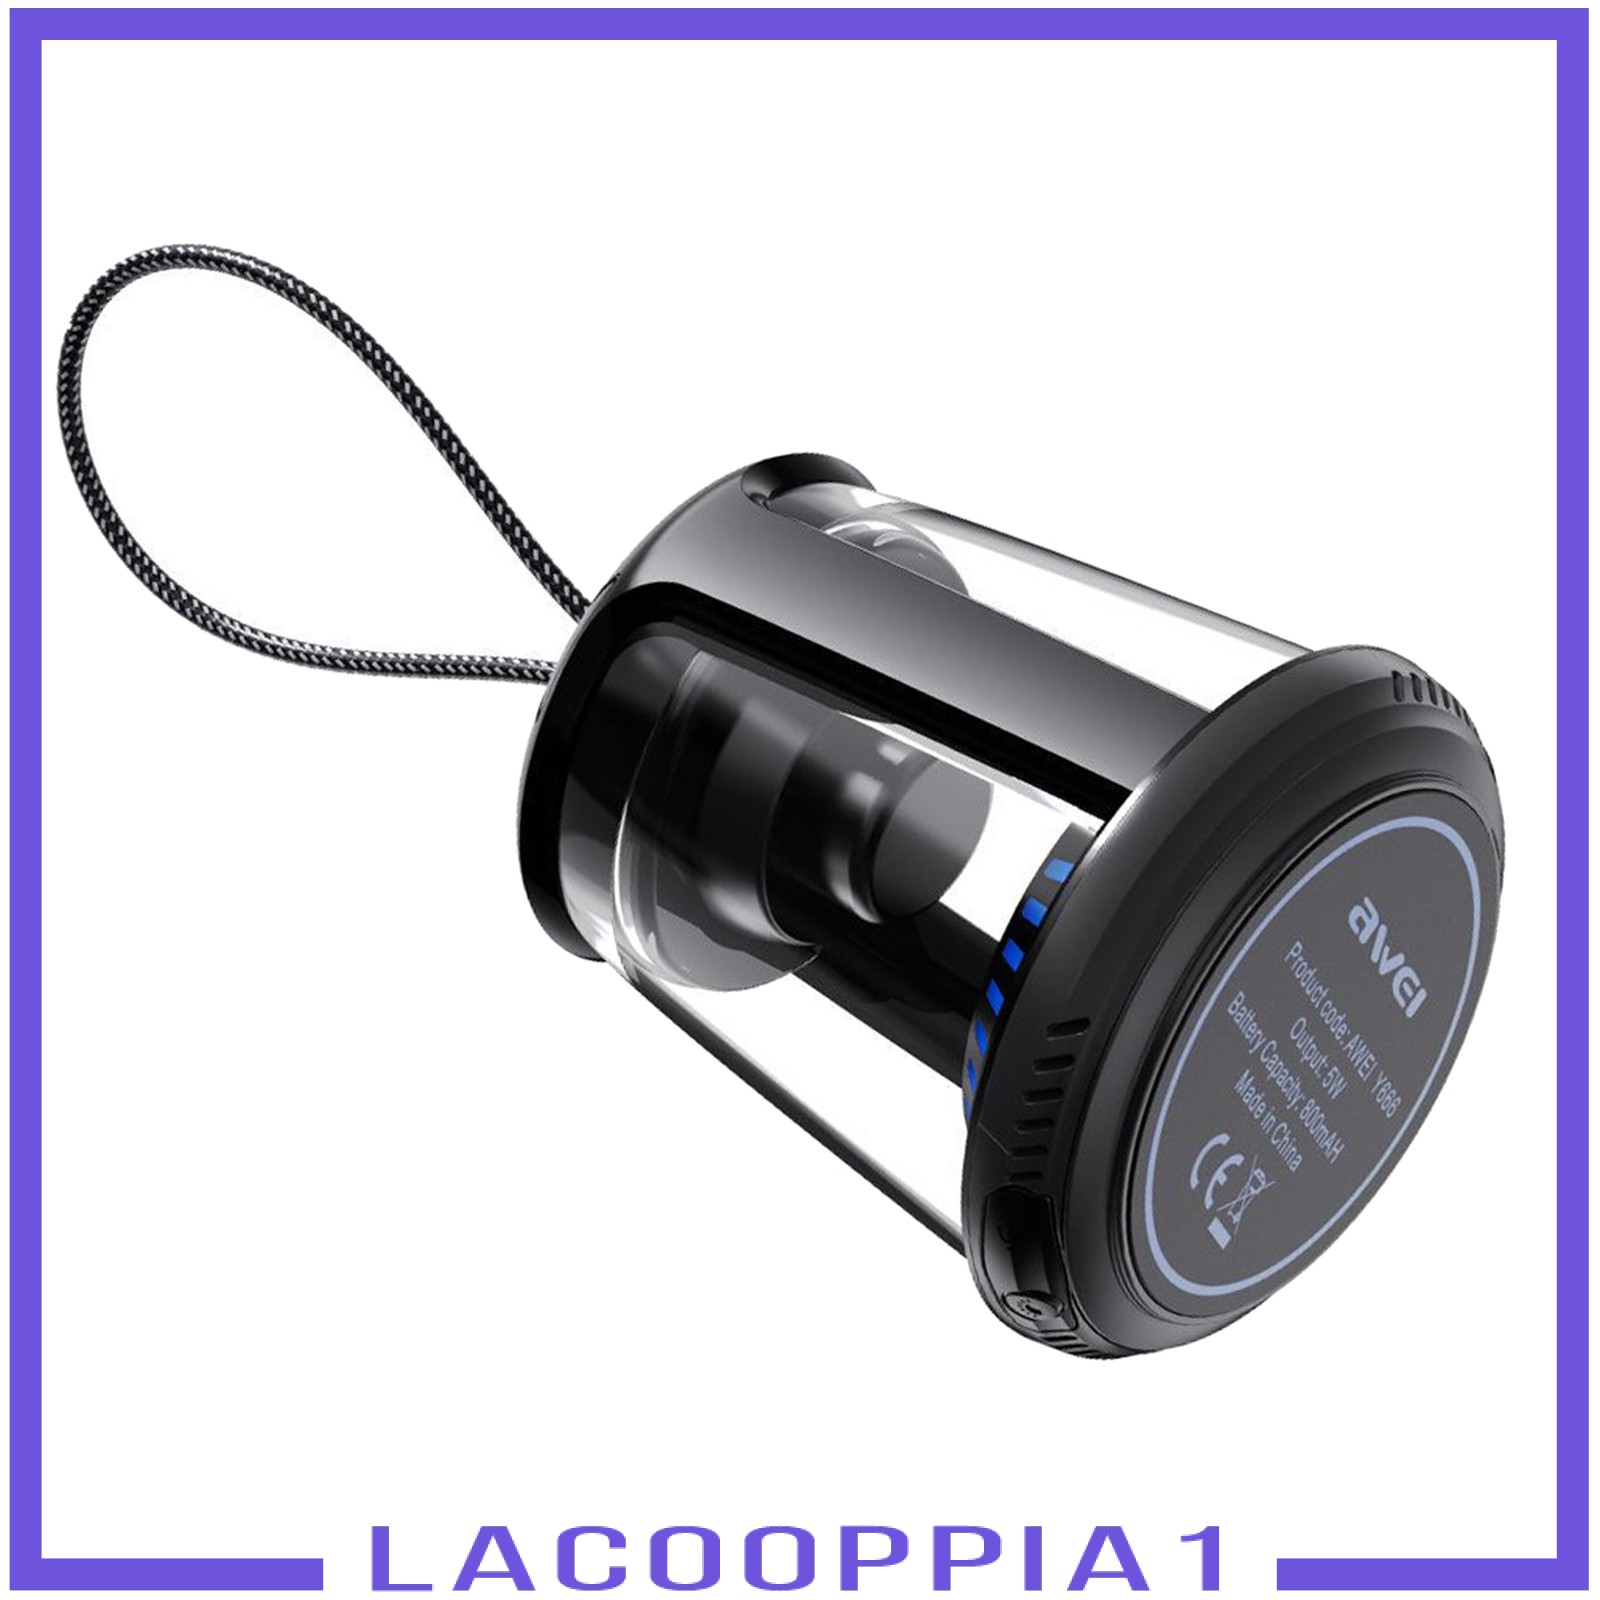 Loa Lapopopia1 Chống Nước Kết Nối Bluetooth Có Đèn Nhiều Màu Sắc